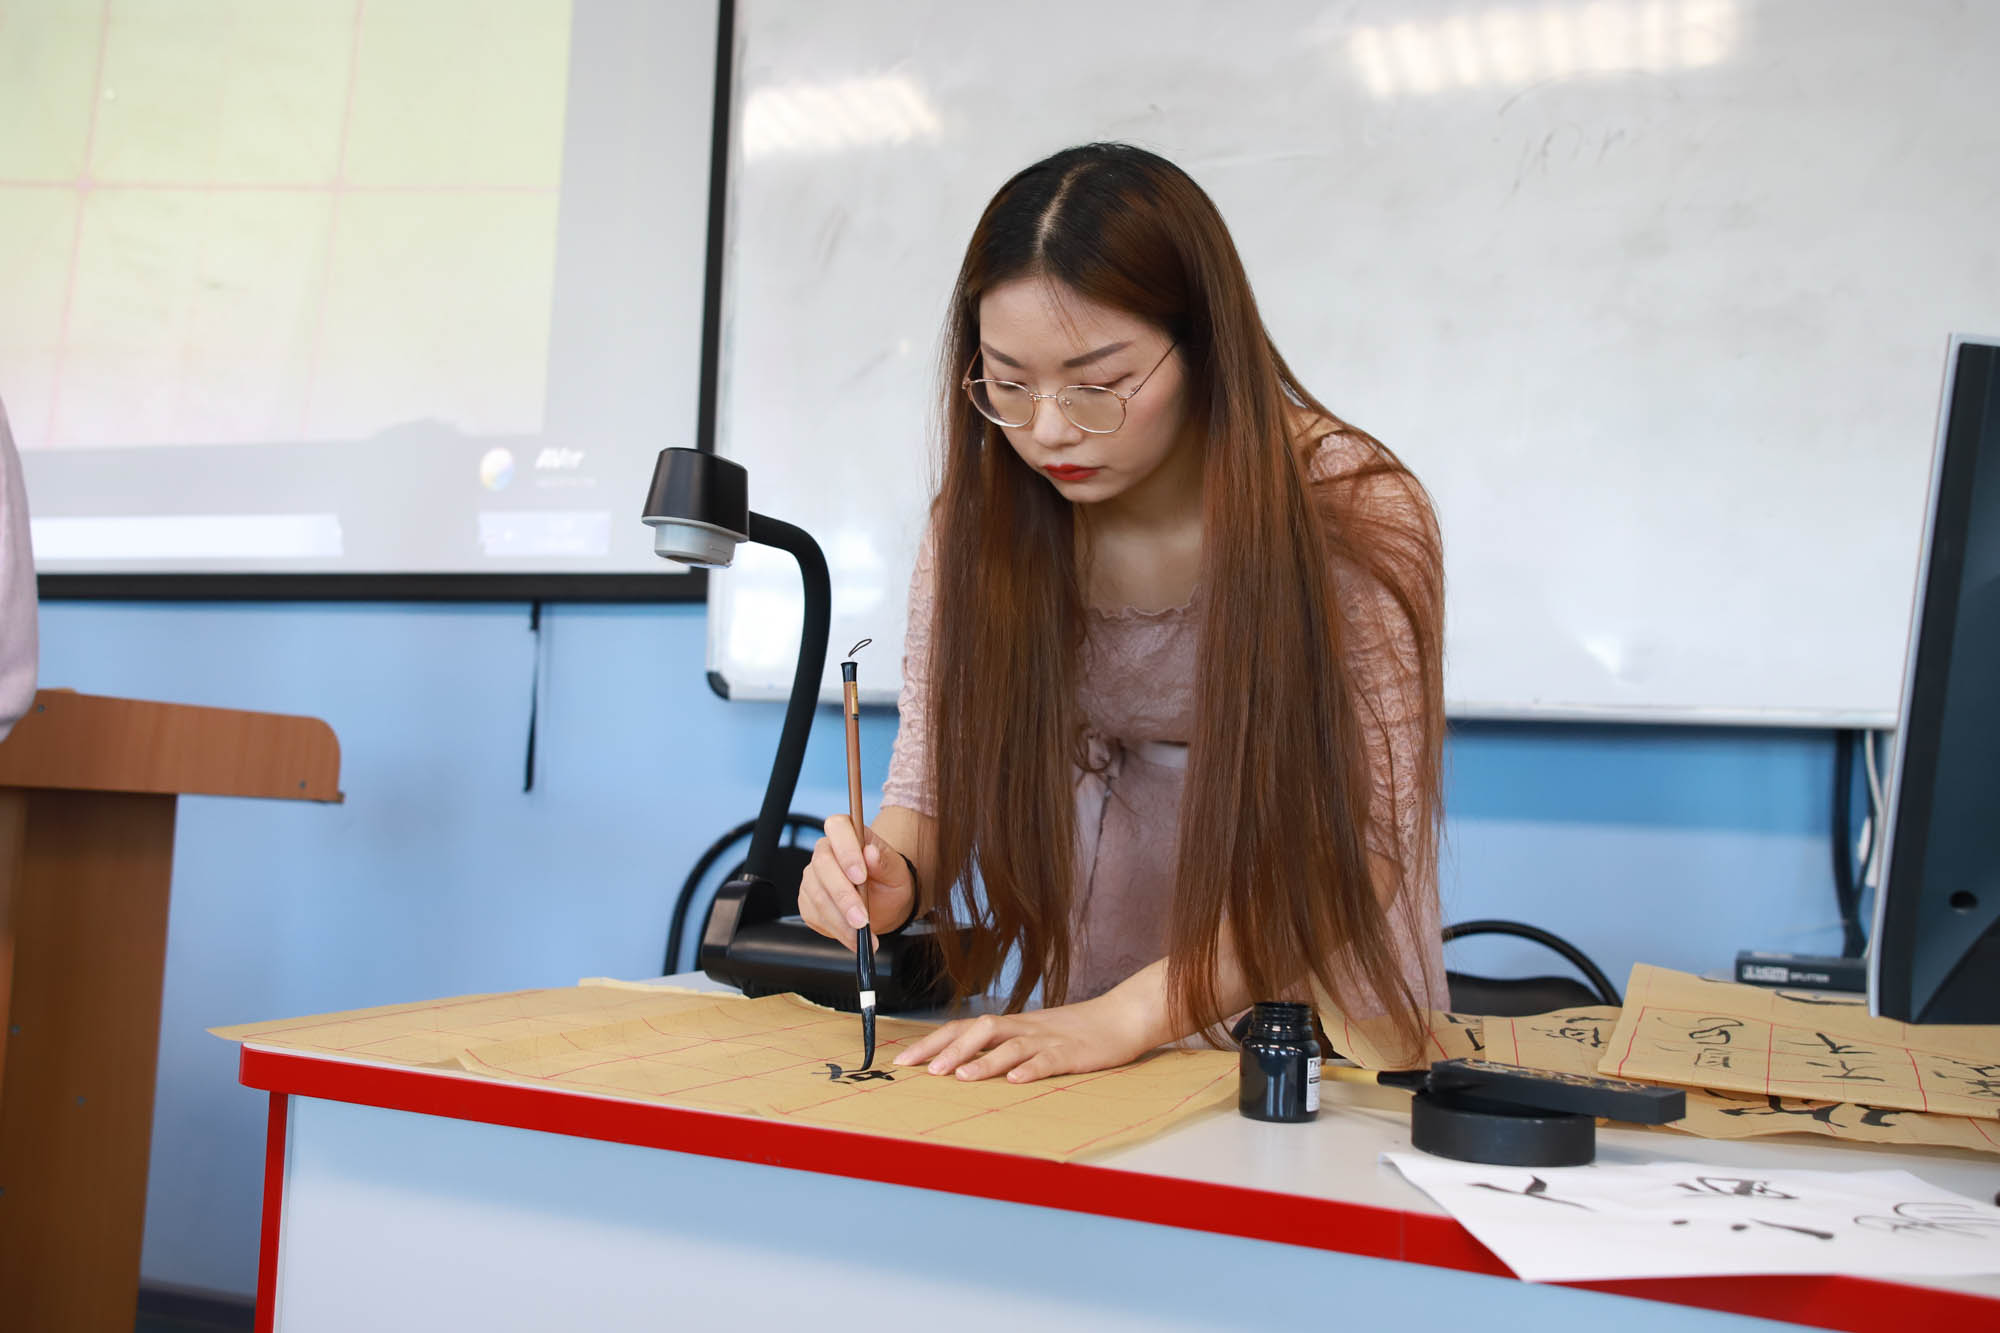 Мастер-класс по каллиграфии от китайских преподавателей прошел в Мининском университете